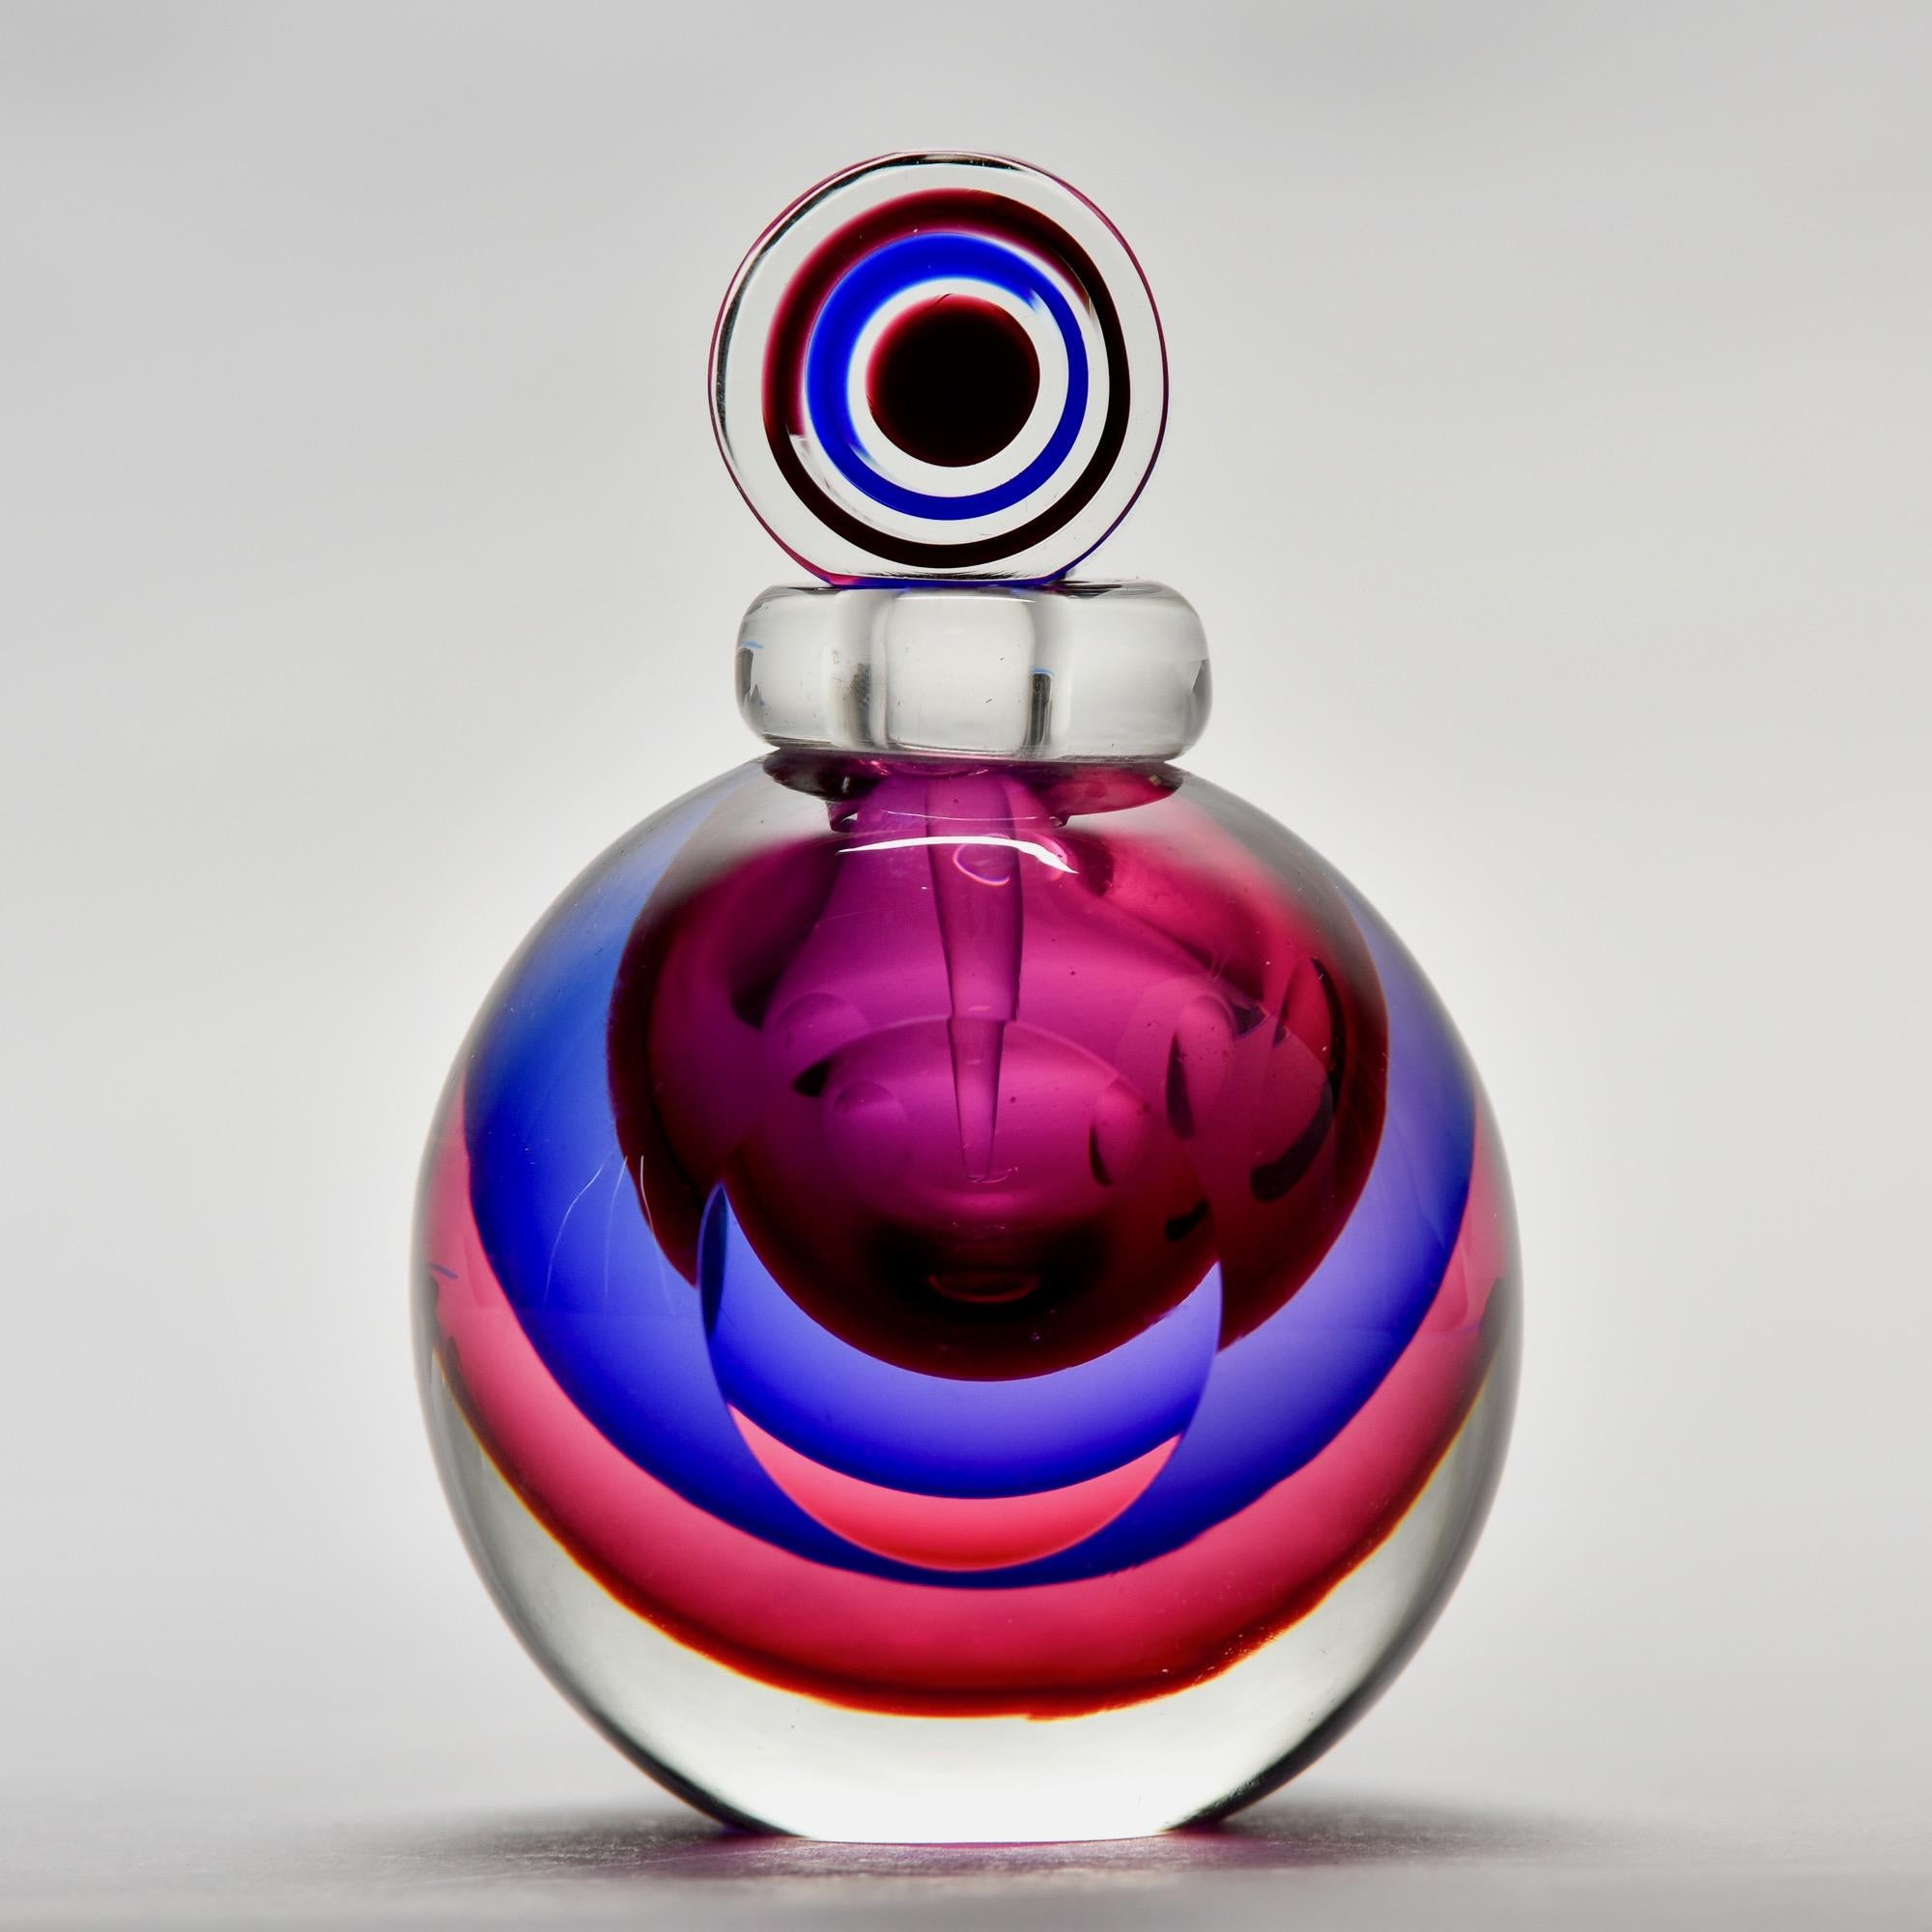 Der runde Parfümflakon aus Murano-Glas zeichnet sich durch seine schwere, klare Klasse aus, die durch Schichten aus fuchsia-, violett- und beerenfarbenen Juwelen im Sommerso-Stil unterstrichen wird. Oben ist ein Dufttupfer angebracht. Nicht